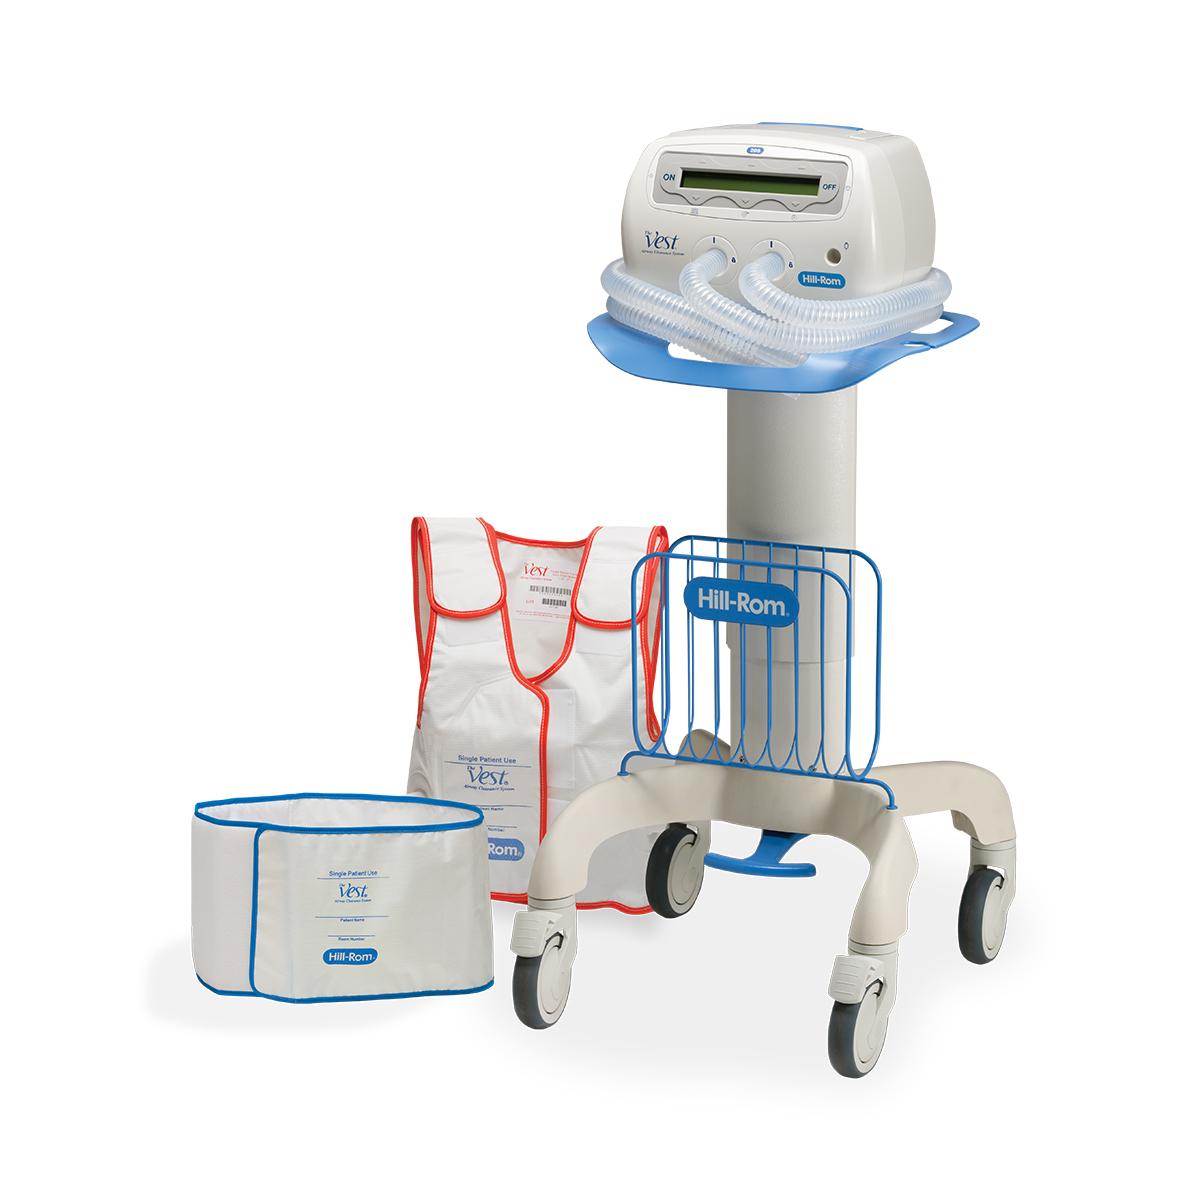 System The Vest, model 205, jednostka sterująca na stojaku wraz z kamizelką przeznaczoną do użytku u jednego pacjenta i chustą widocznymi w pobliżu